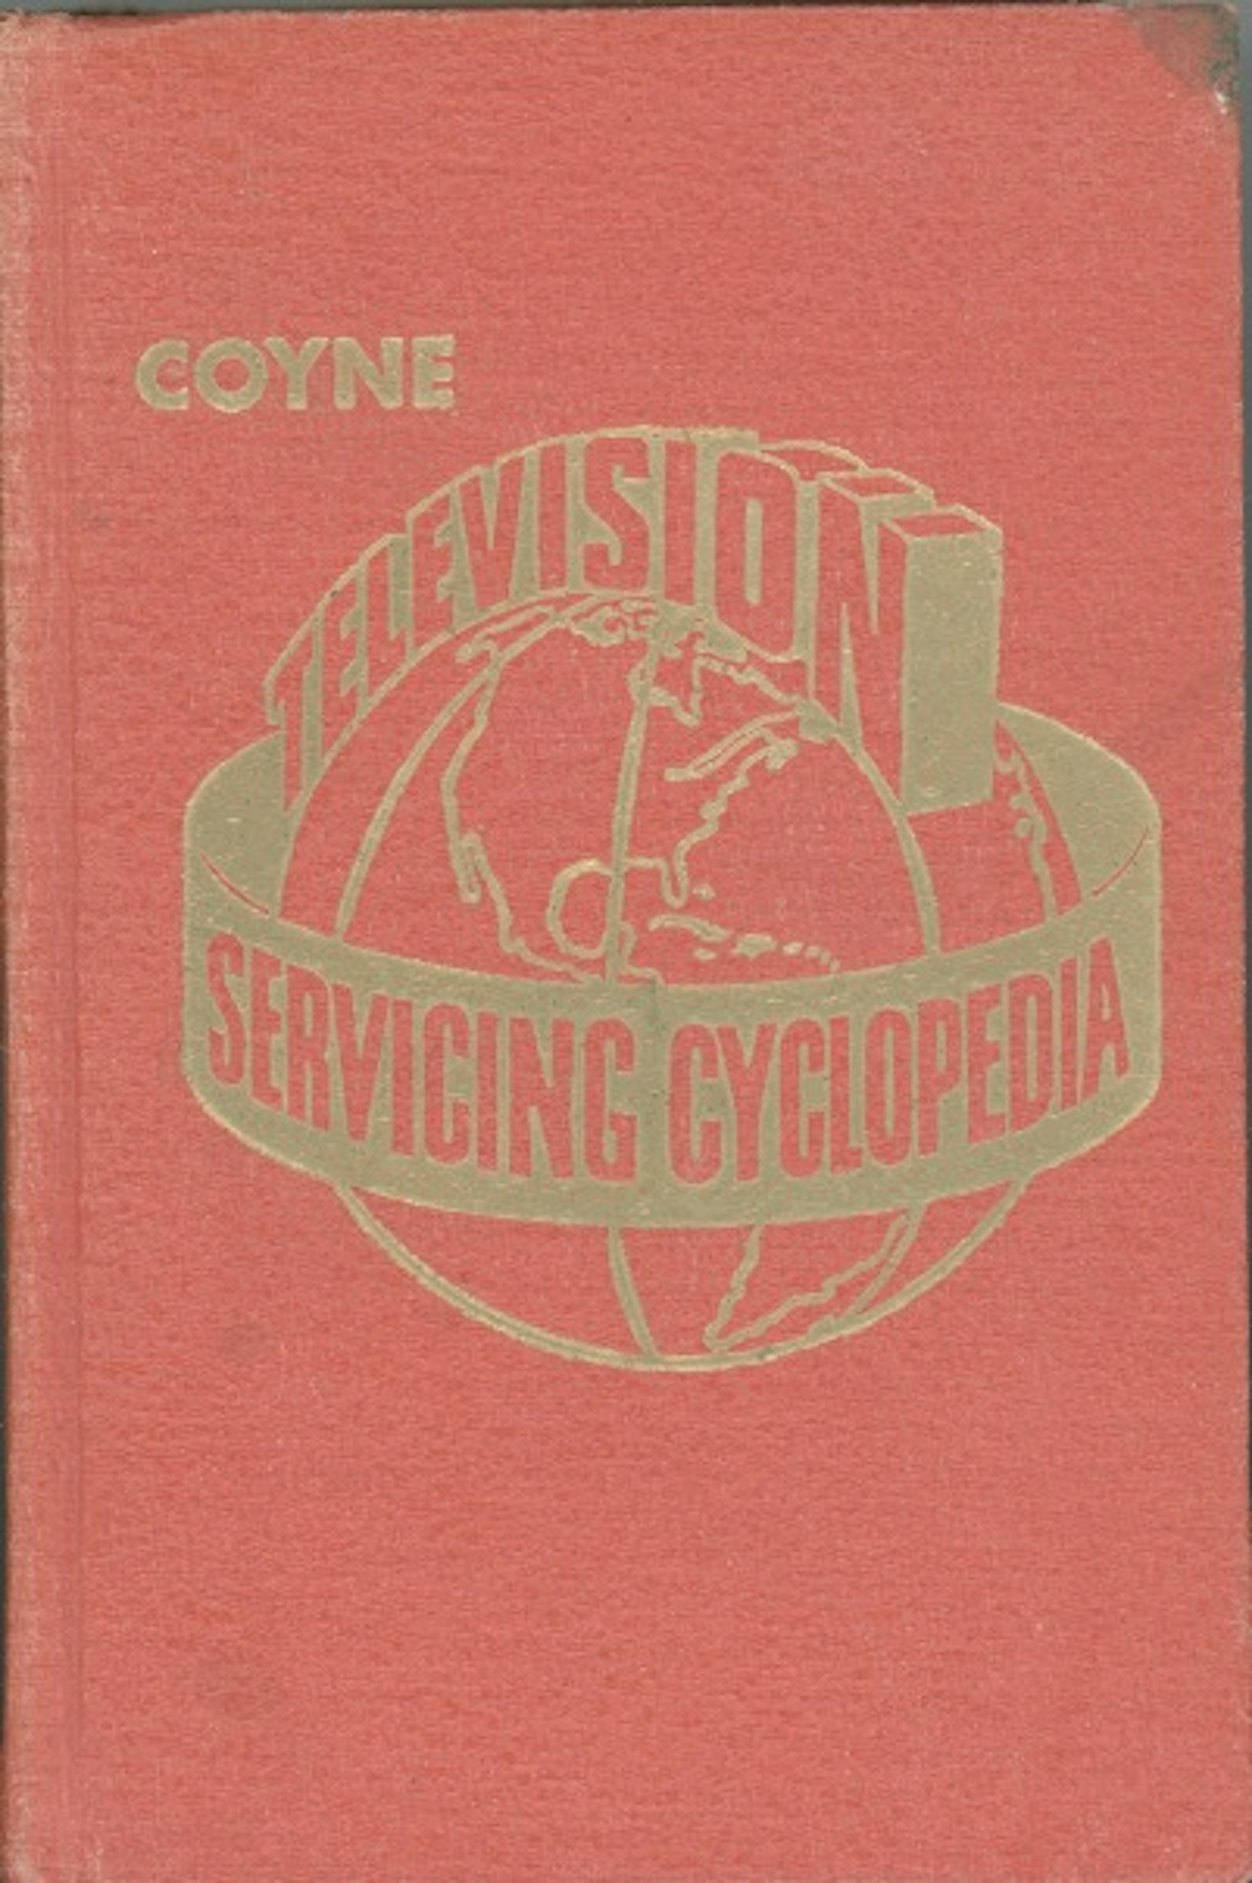 Television Servicing Cyclopedia